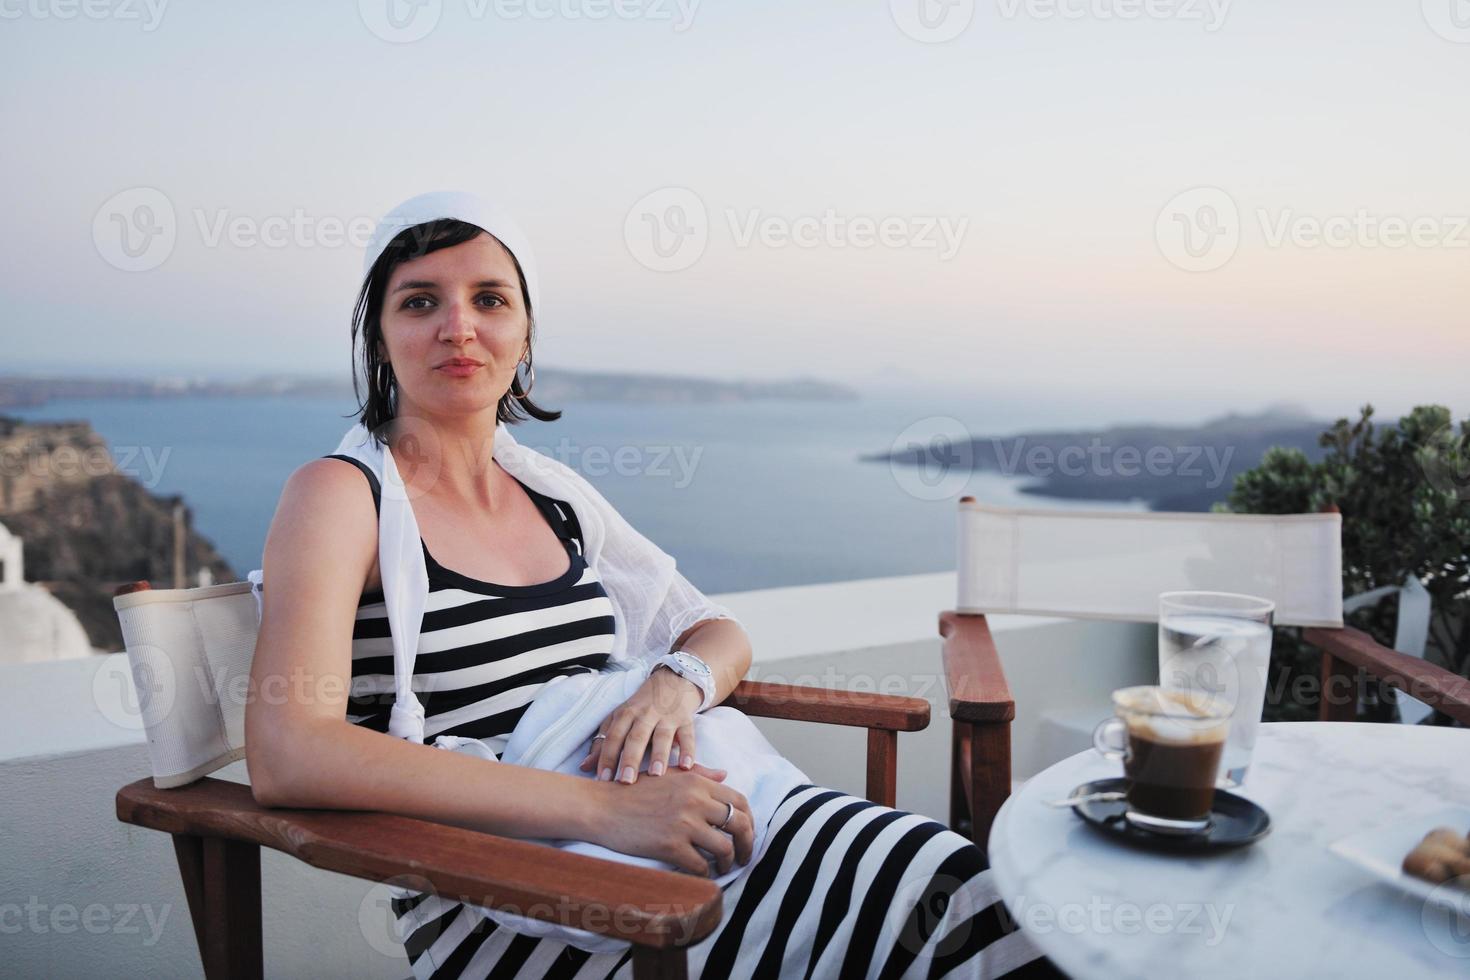 femme grecque dans les rues d'oia, santorin, grèce photo